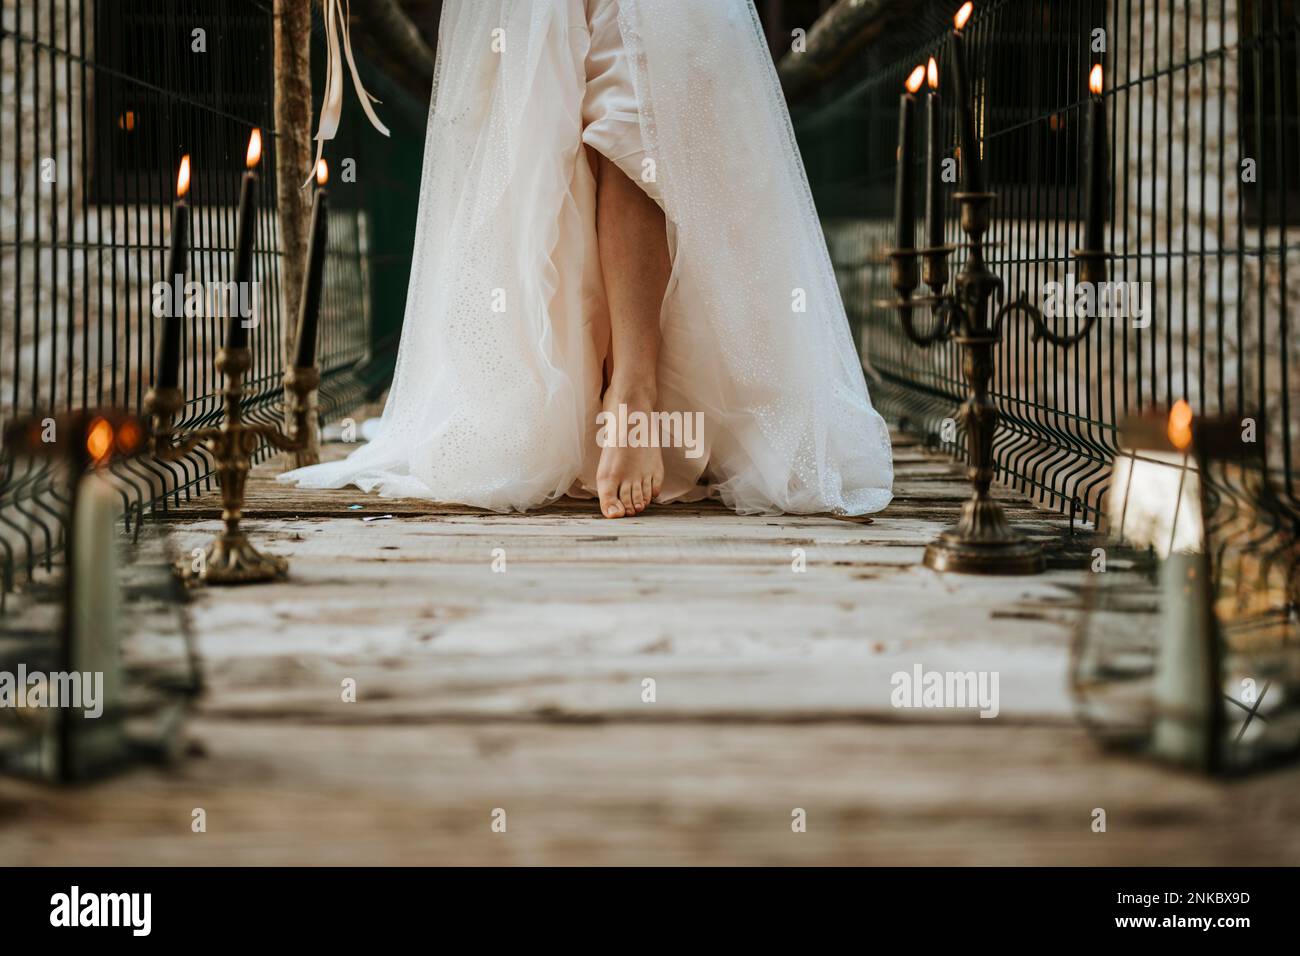 Pied de mariée sur pont en bois plein de bougies Banque D'Images